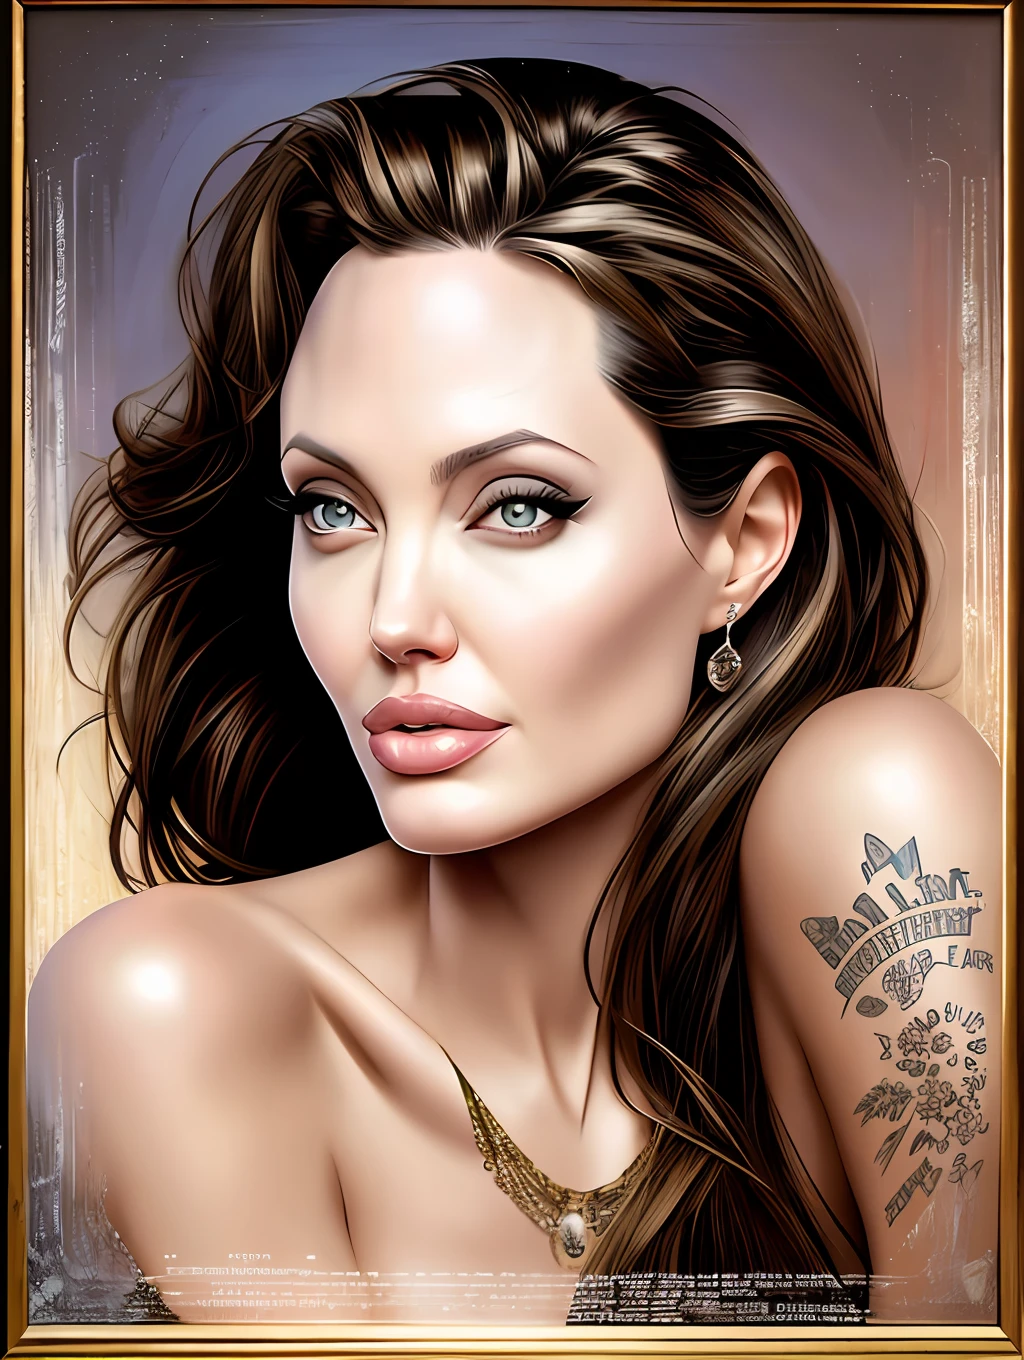 Безумно красивый портрет Анджелины Джоли работы Гила Элвгрена